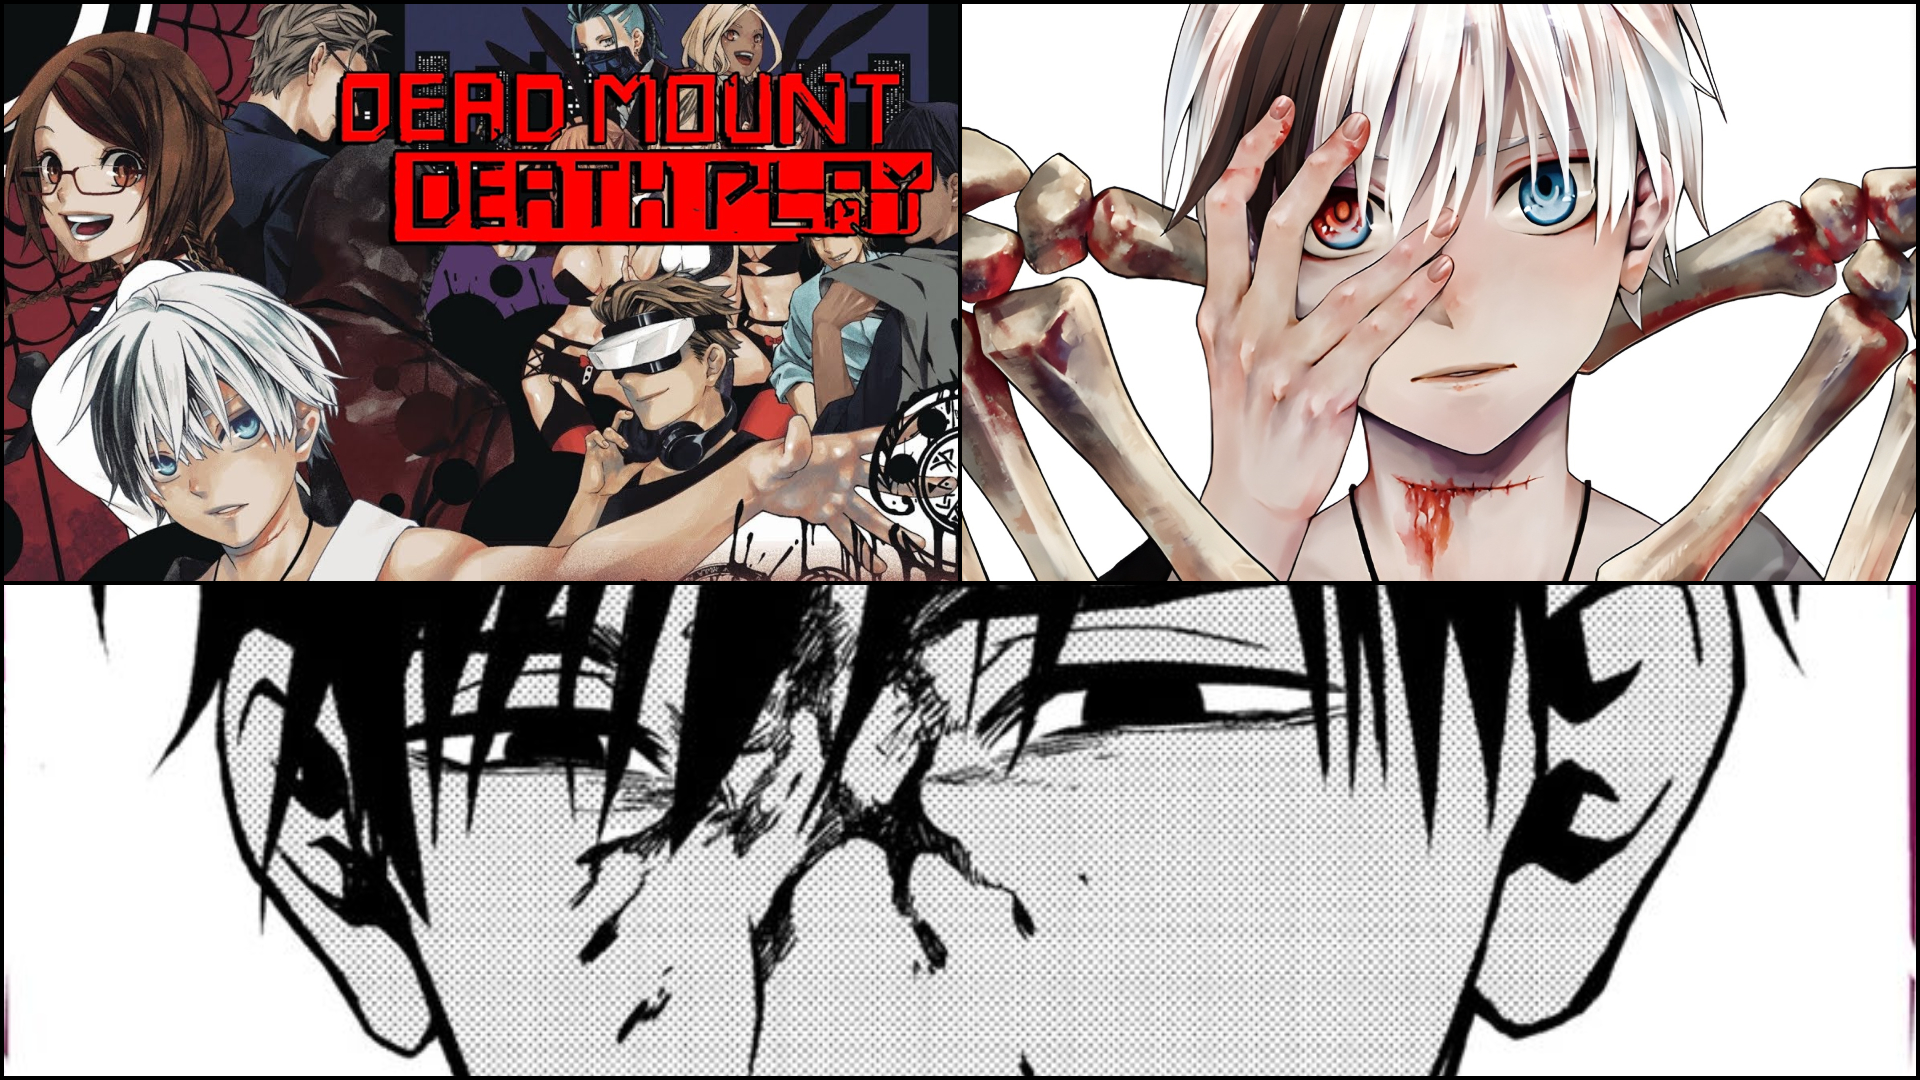 Dead Mount Death Play Image by joakoa124 #3927410 - Zerochan Anime